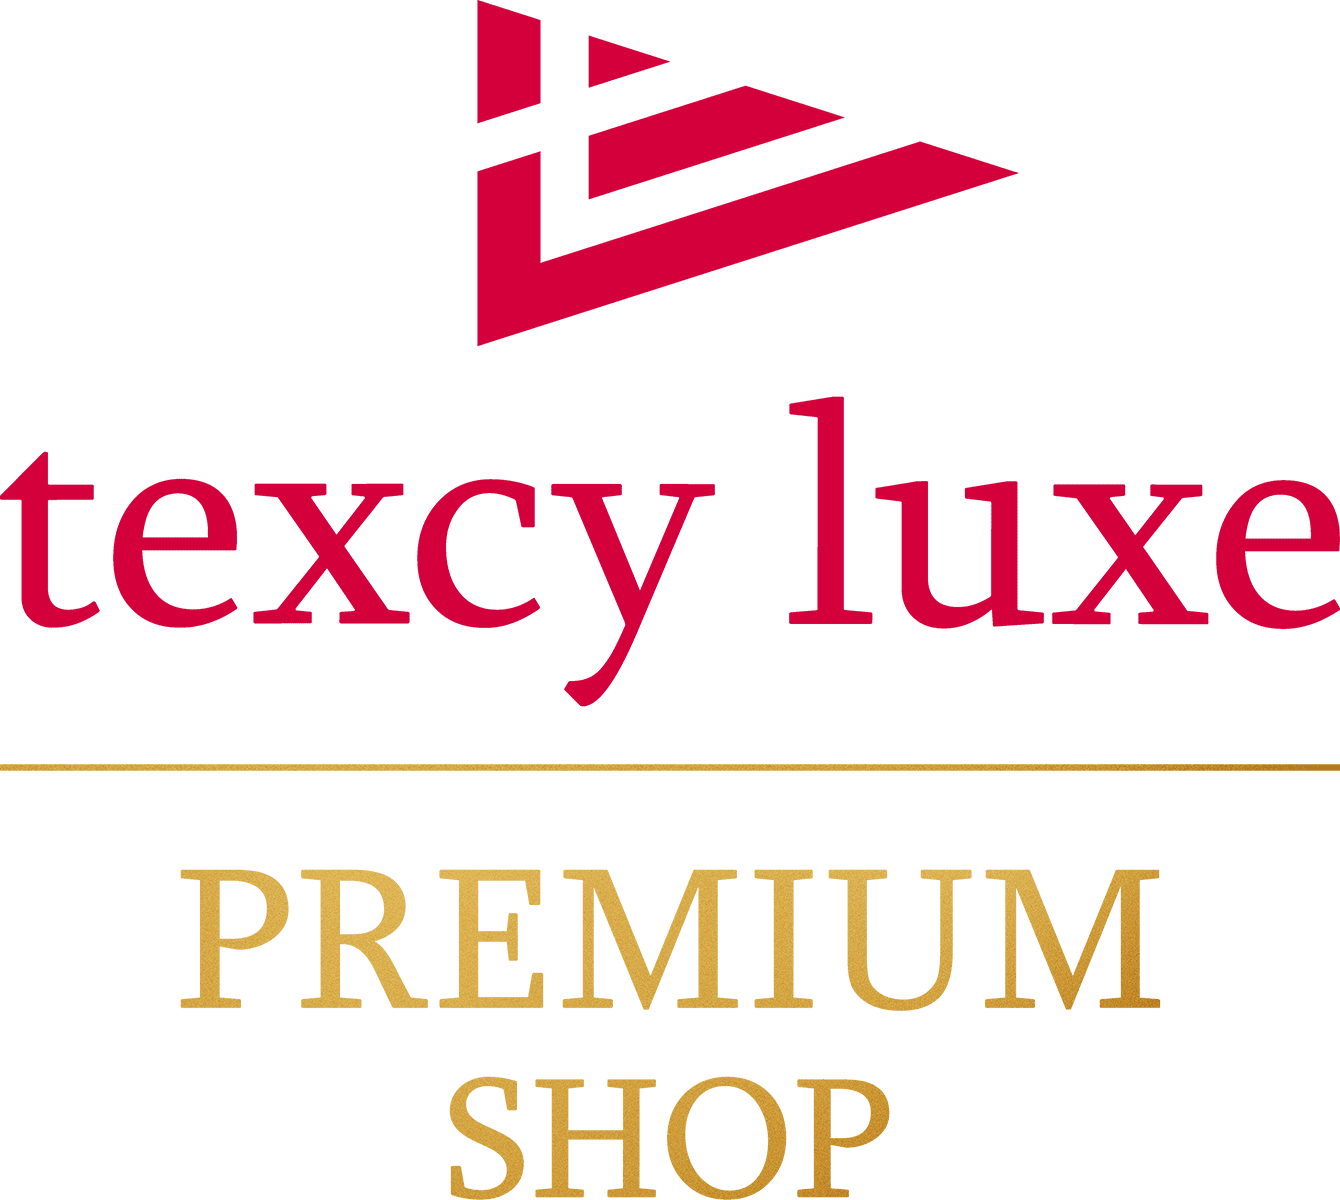 texcy luxe - PREMIUM SHOP